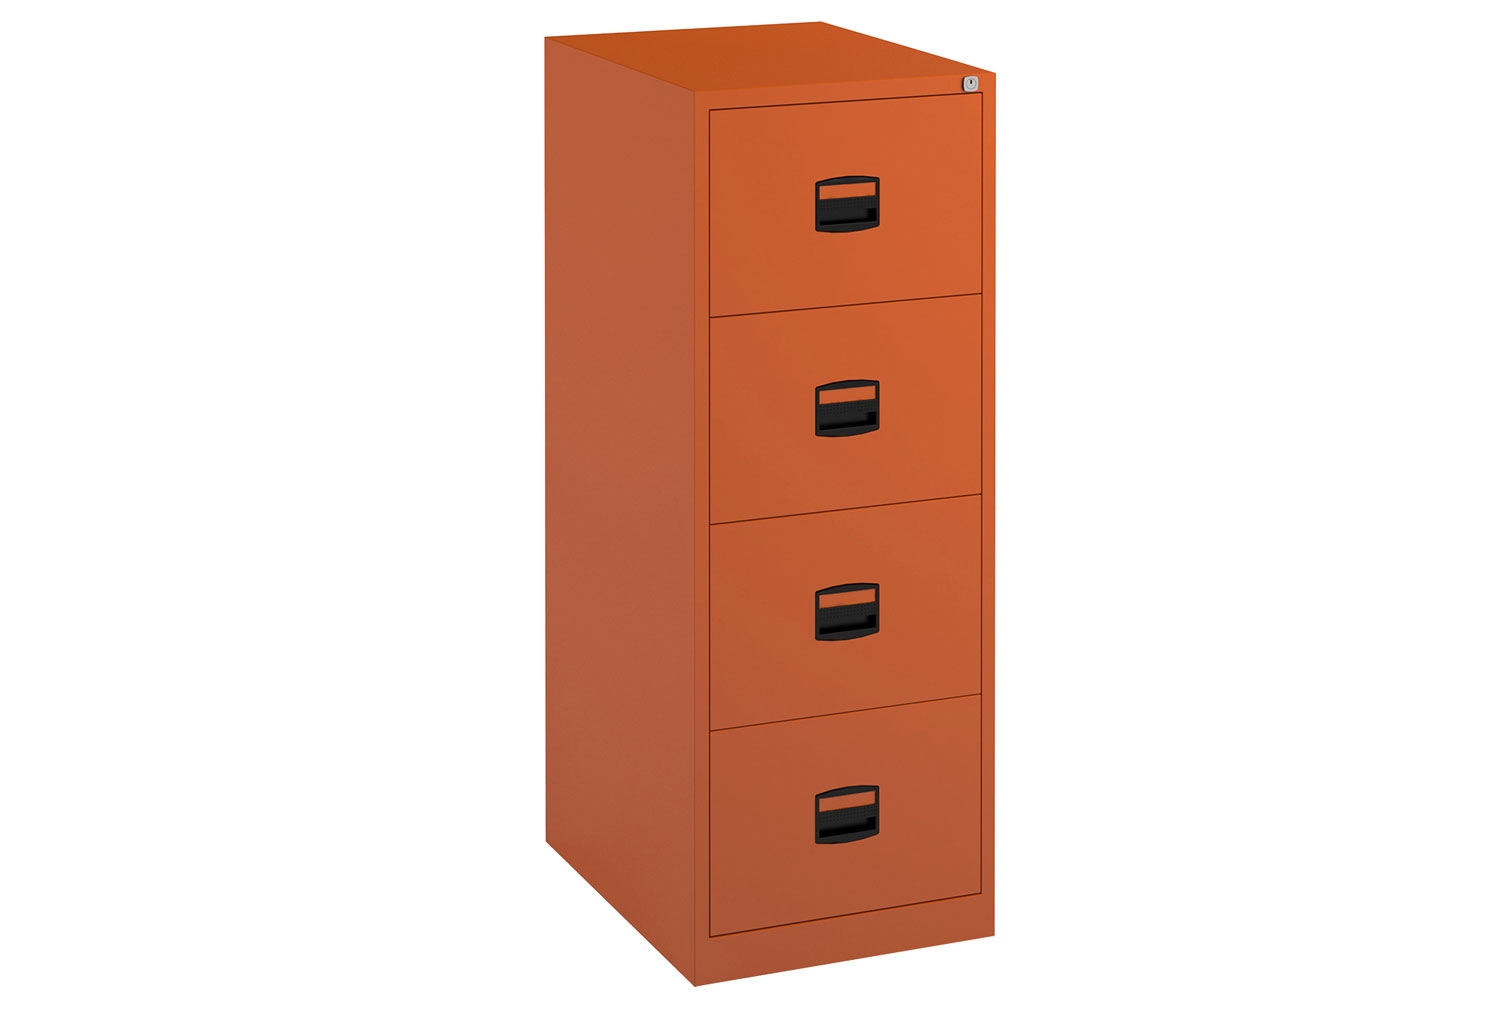 Bisley Economy Filing Cabinet (Central Handle), 4 Drawer - 47wx62dx132h (cm), Orange